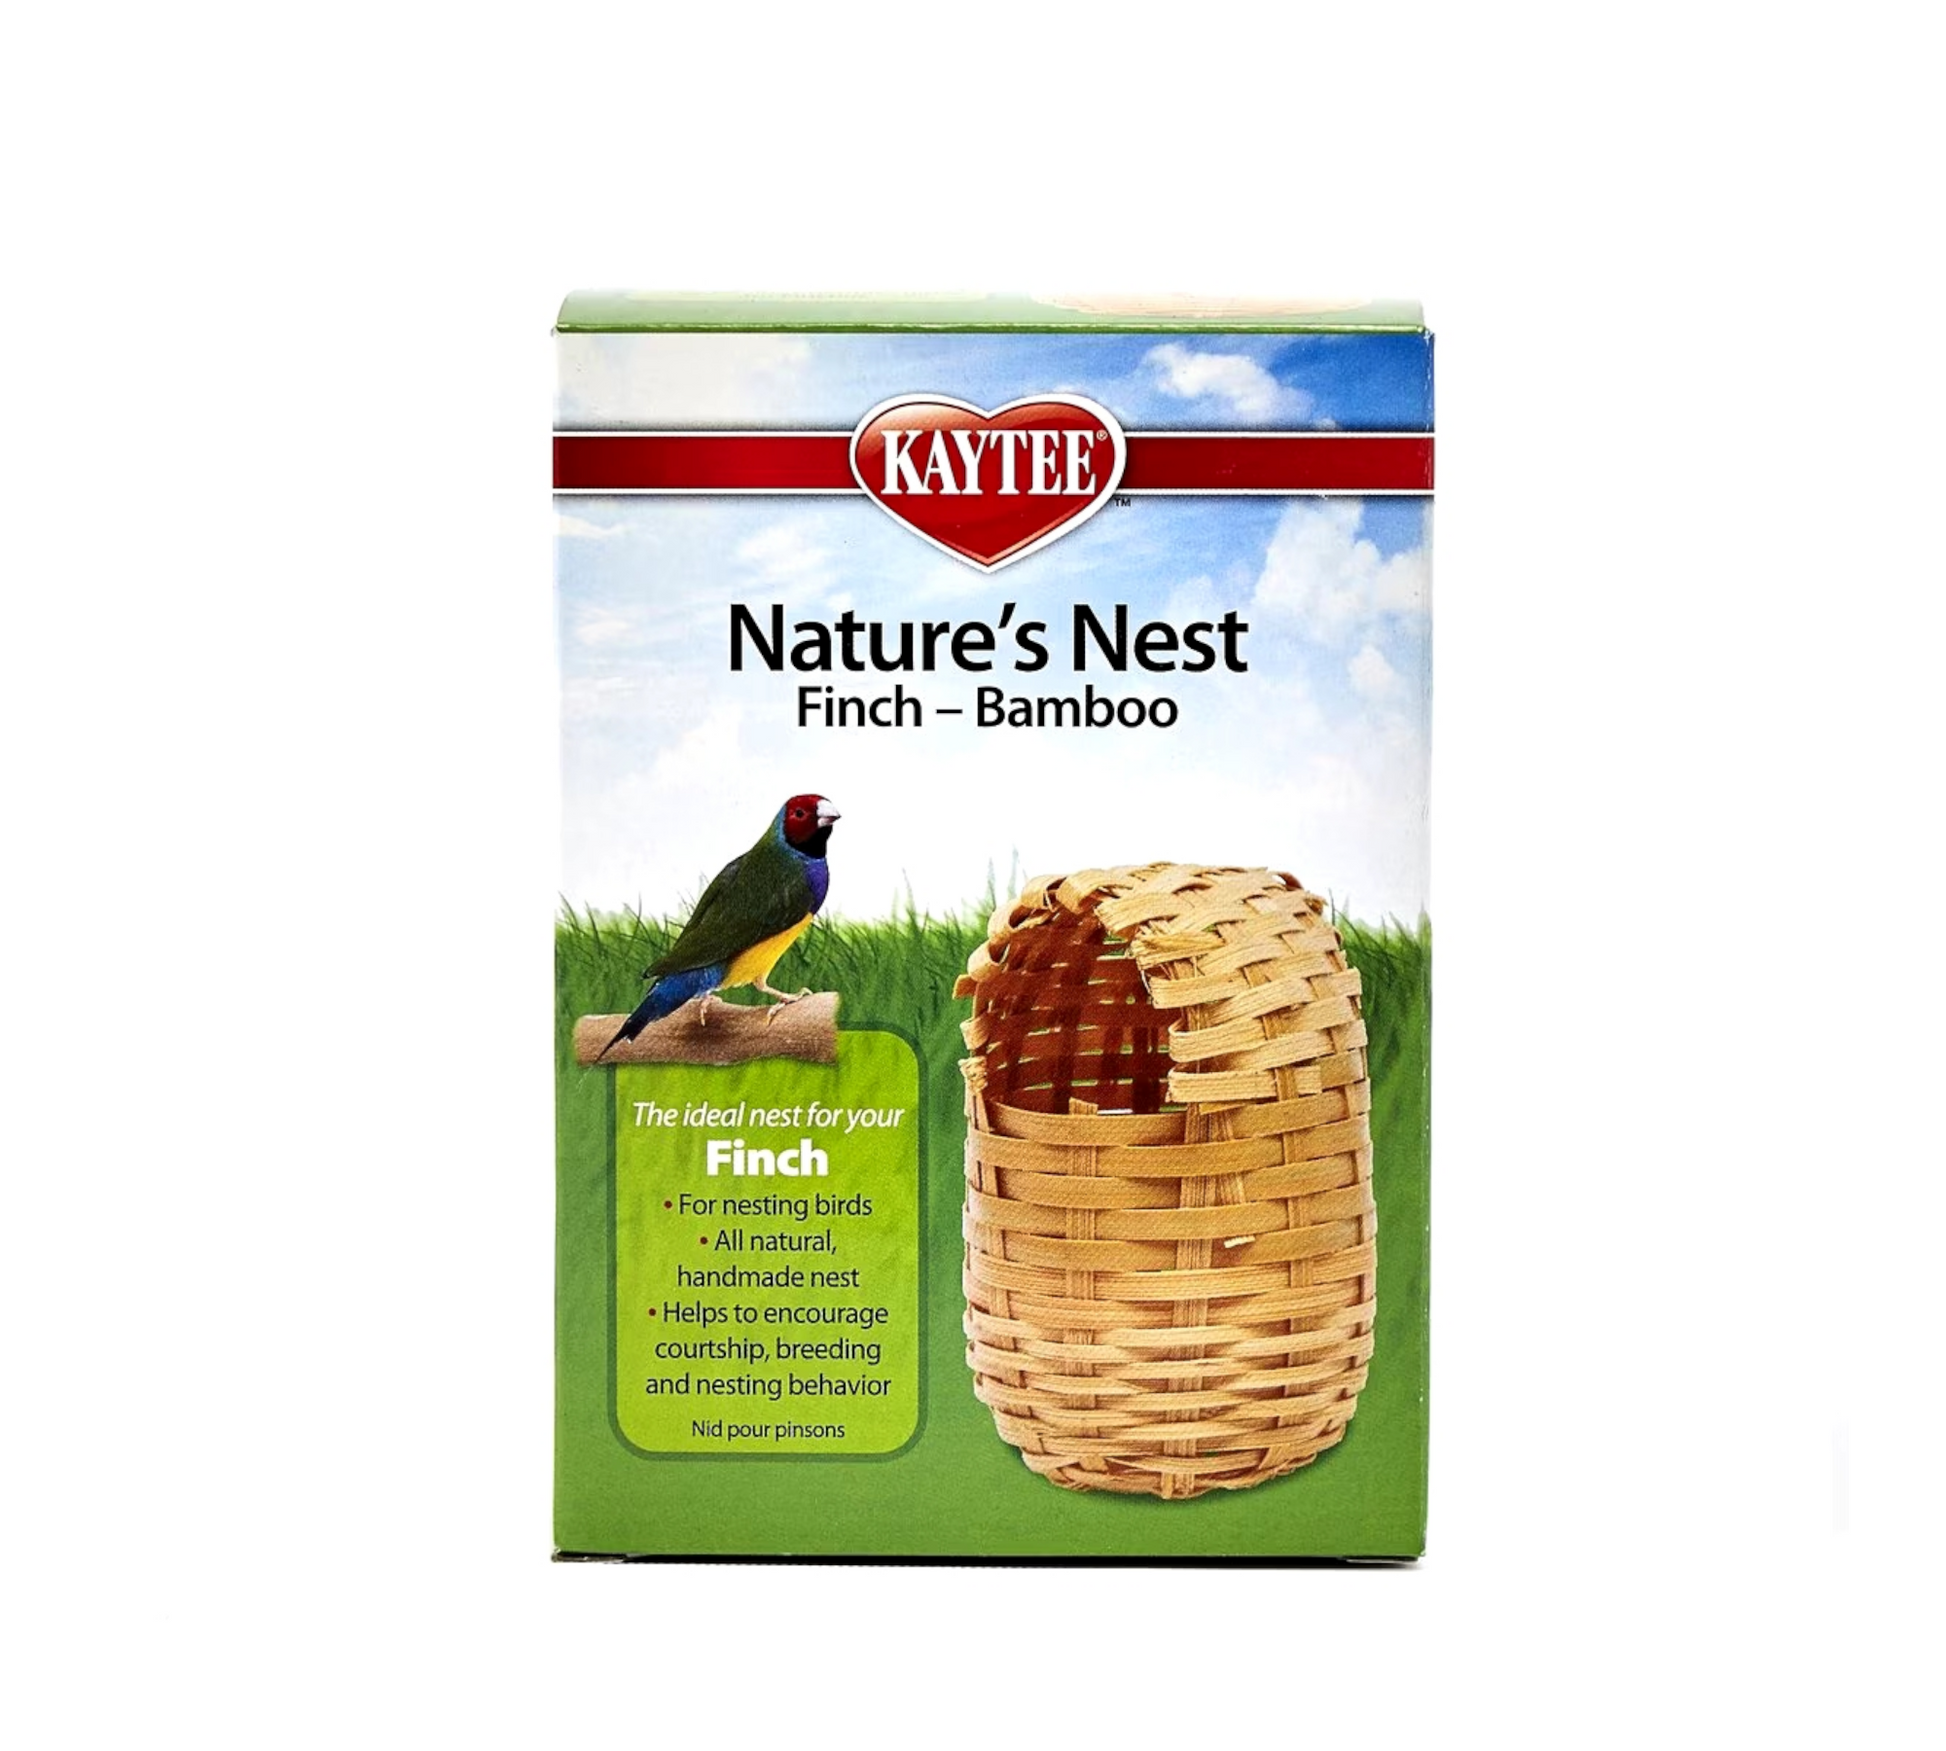 Canine's World Bird Nesting Kaytee Natures Nest Bamboo Finch Nest, Kaytee